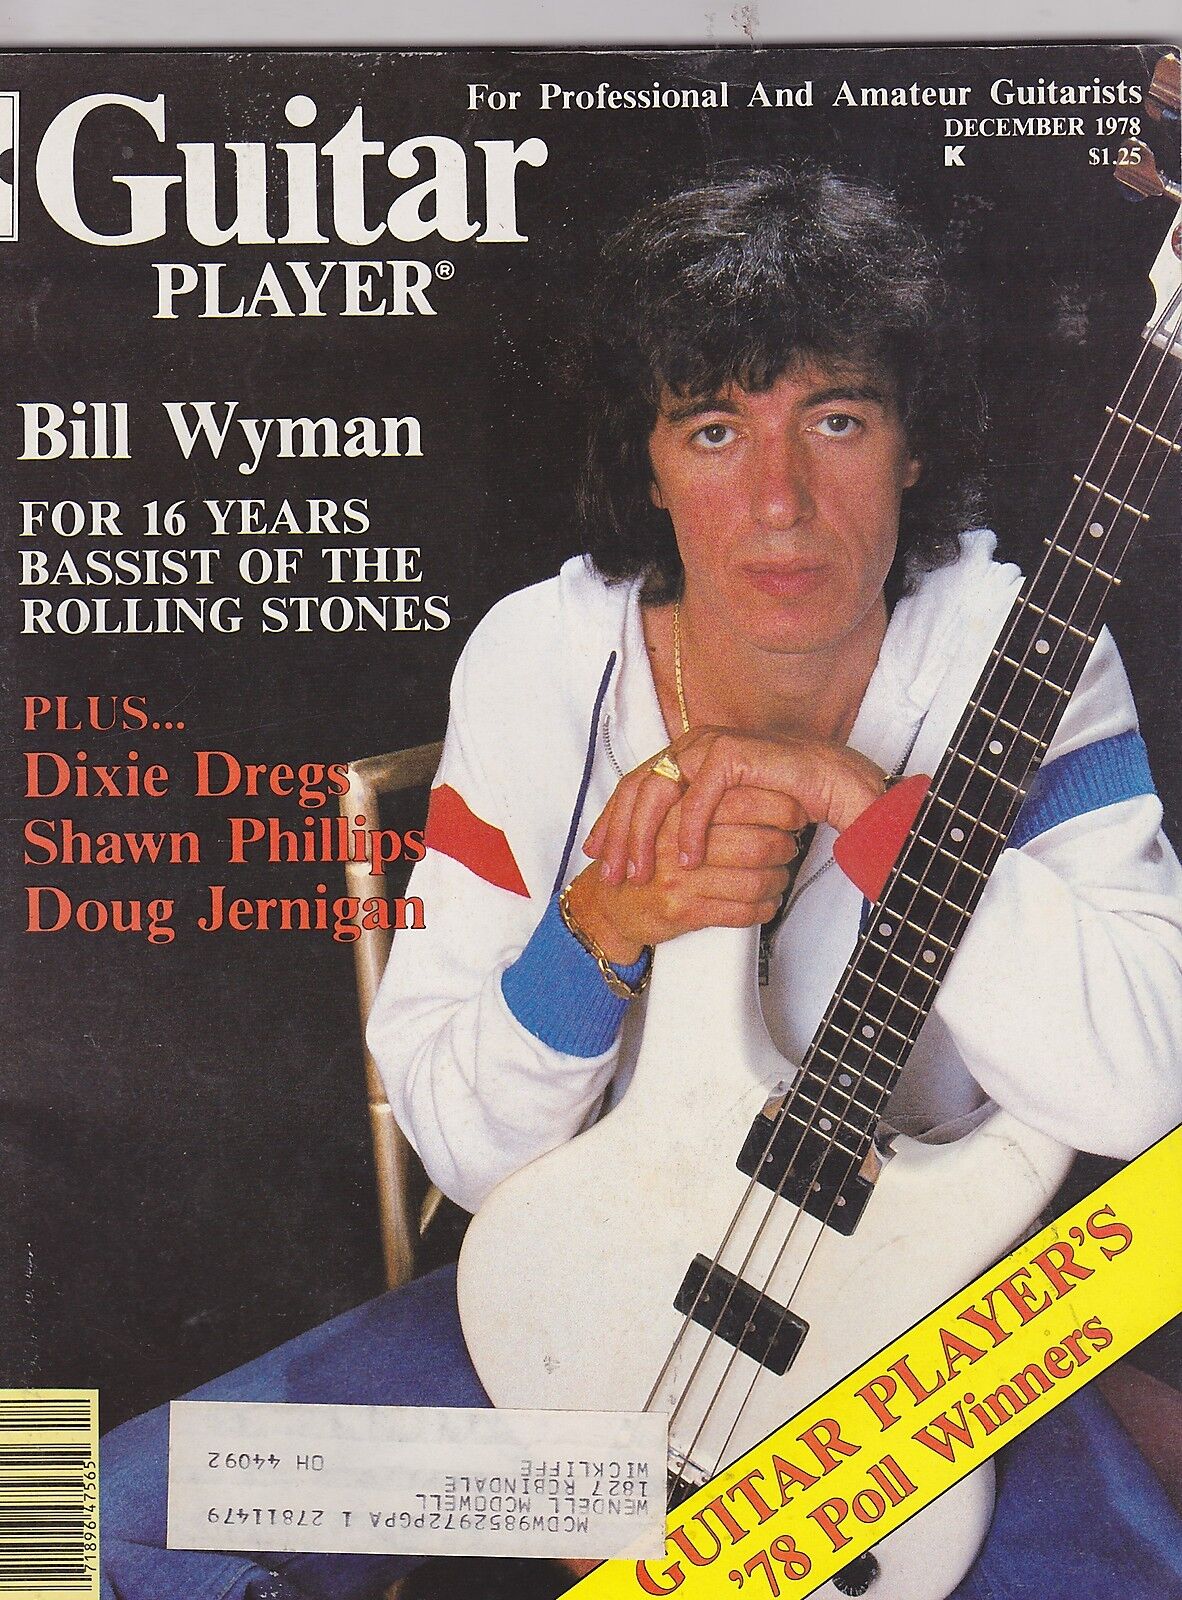 DEC 1978 GUITAR PLAYER vintage music magazine BILL WYMAN